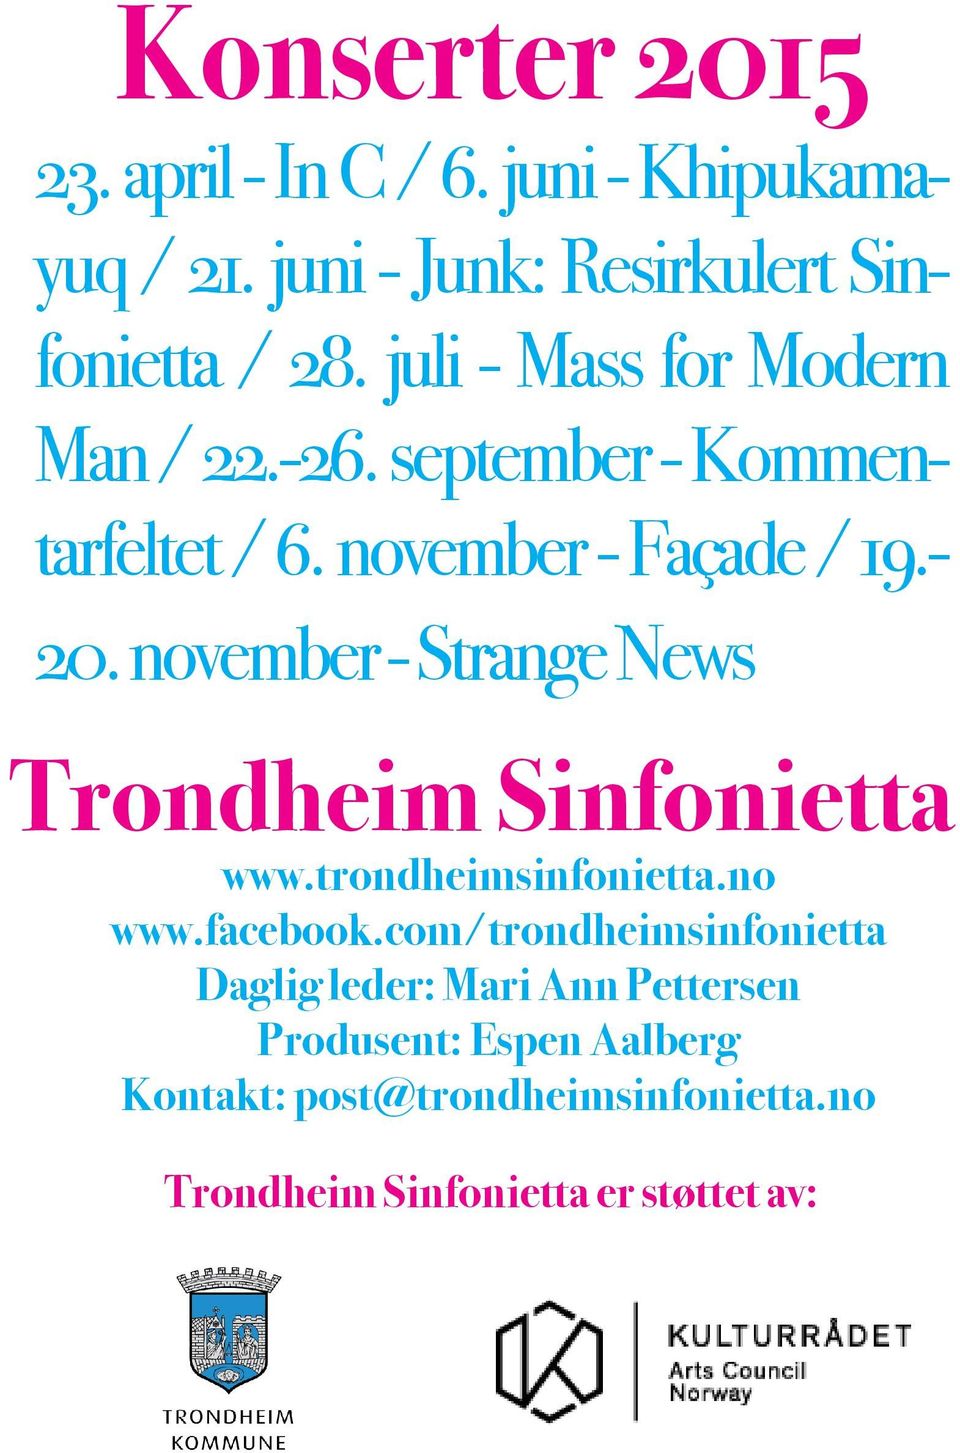 november - Strange News Trondheim Sinfonietta www.trondheimsinfonietta.no www.facebook.